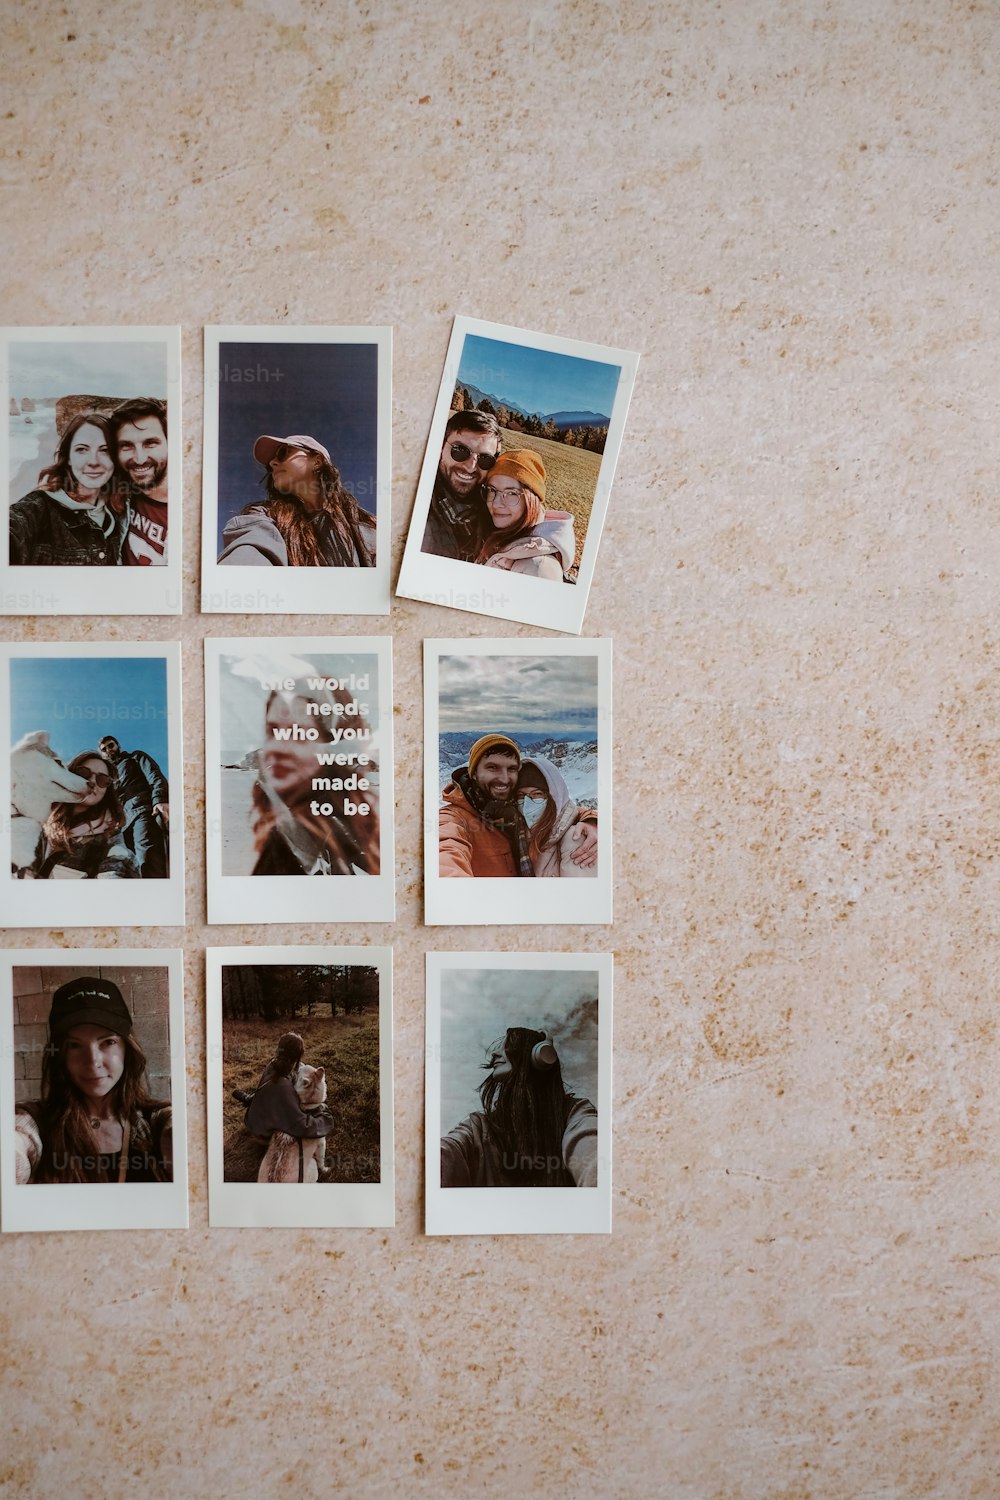 Um grupo de fotos Polaroid de um homem e uma mulher